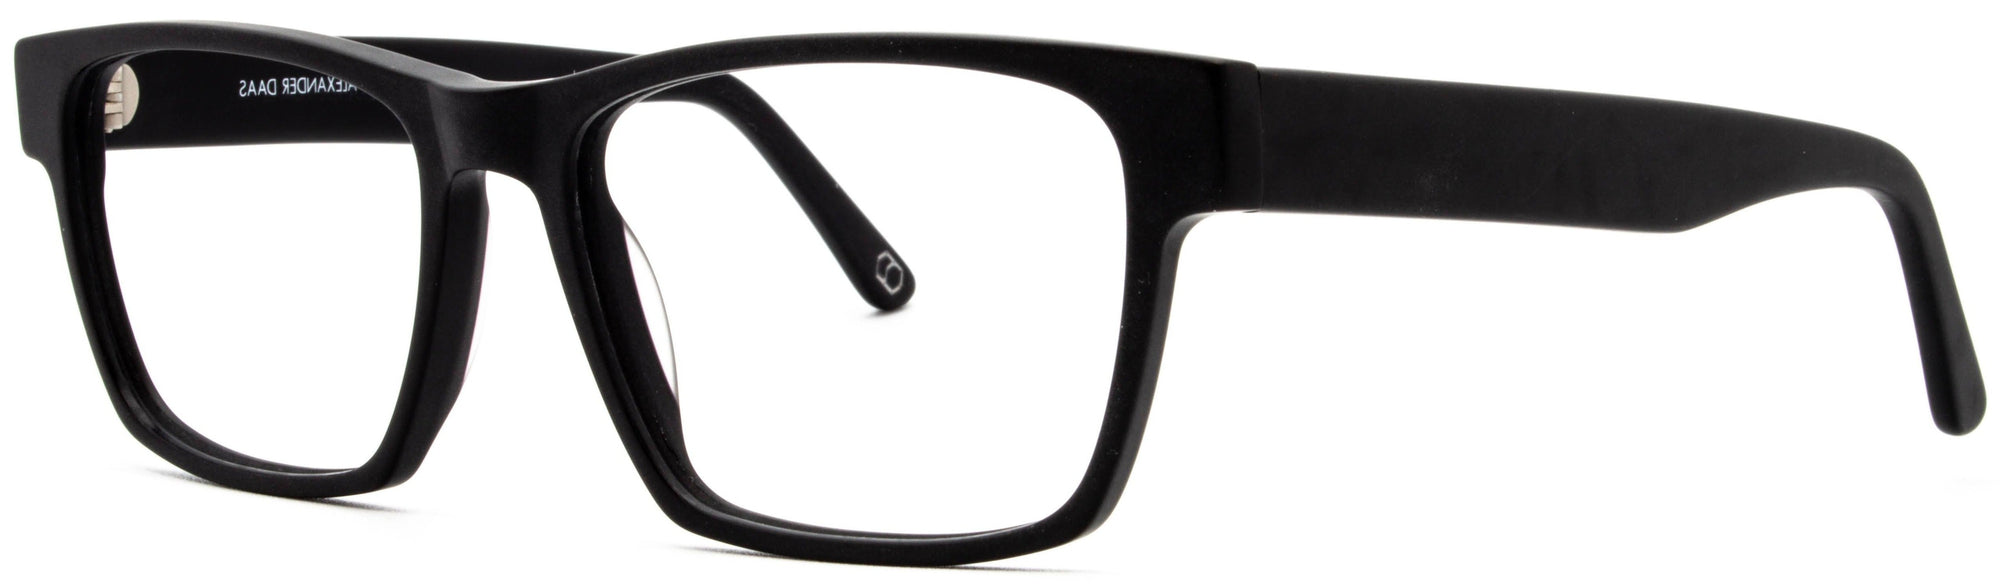 Alexander Daas - Remy Eyeglasses - Black - Side View